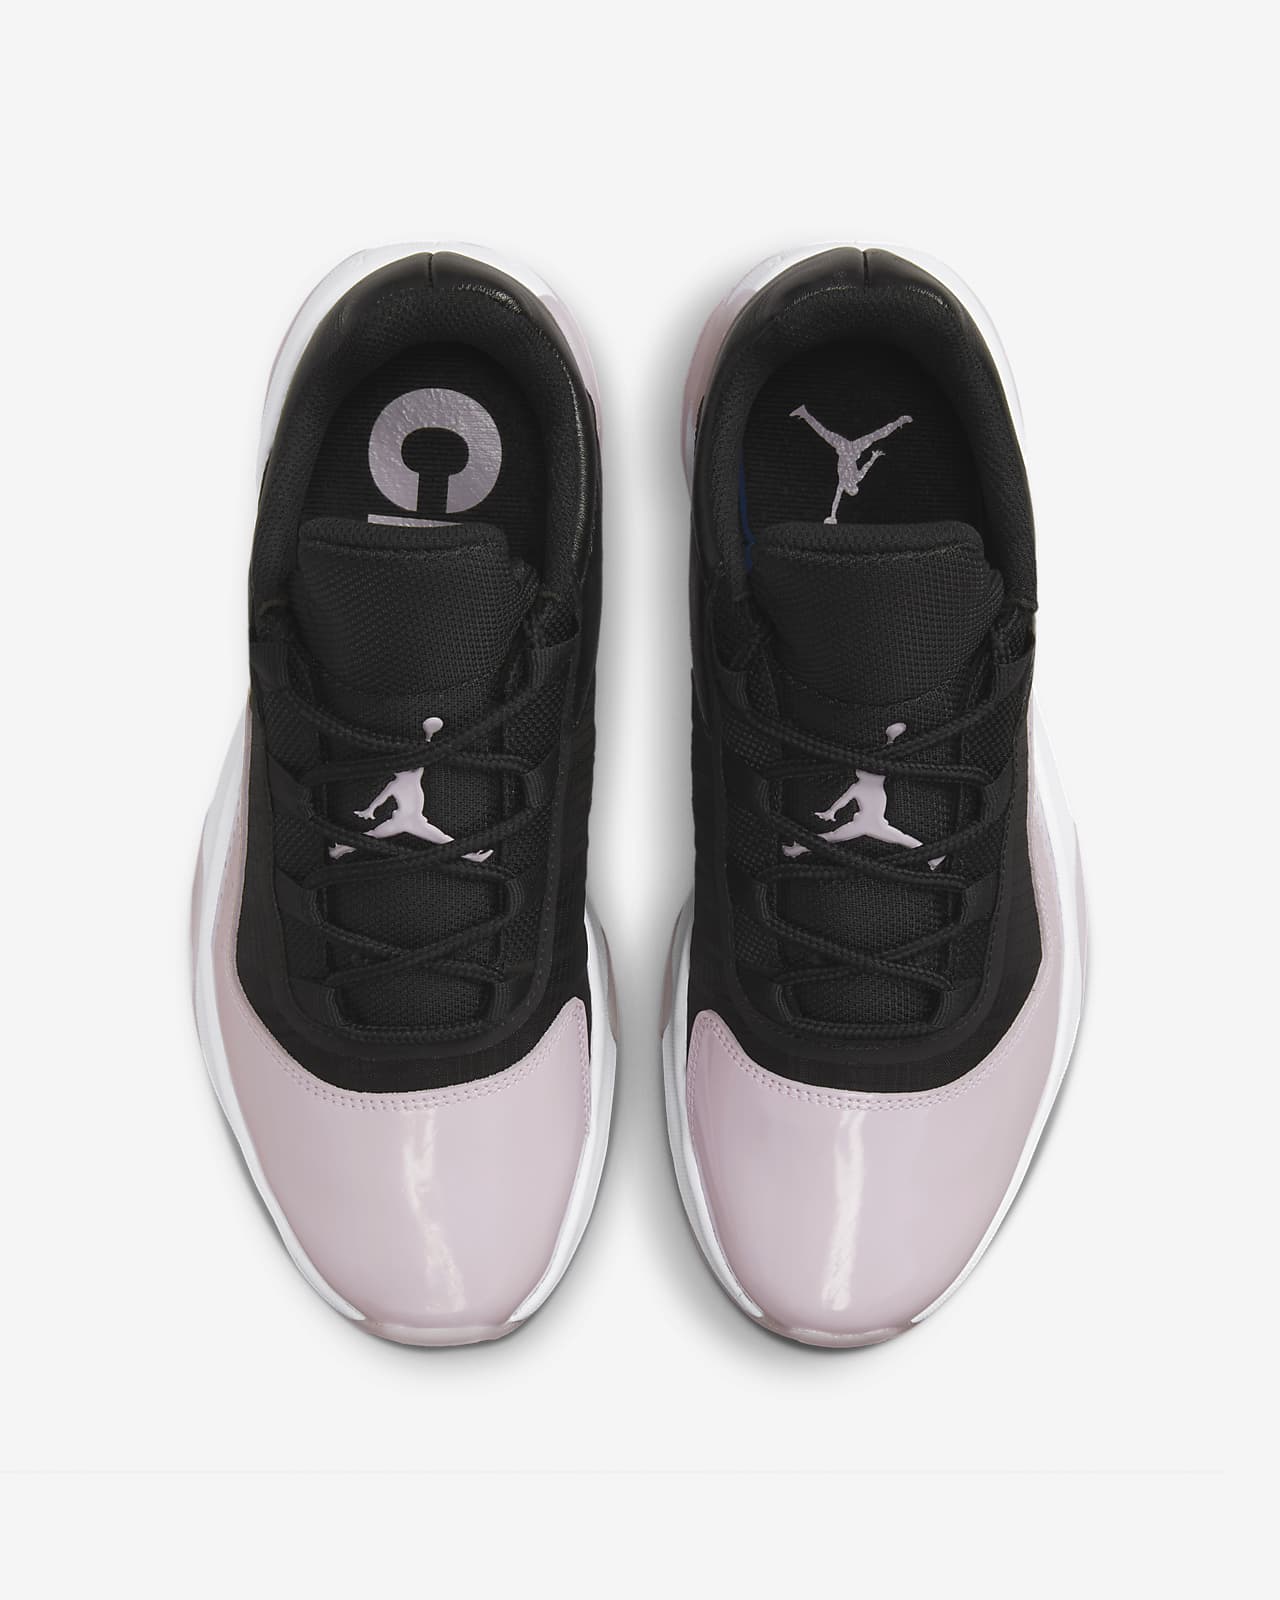 Calzado Air Jordan 11 CMFT mujer. Nike.com